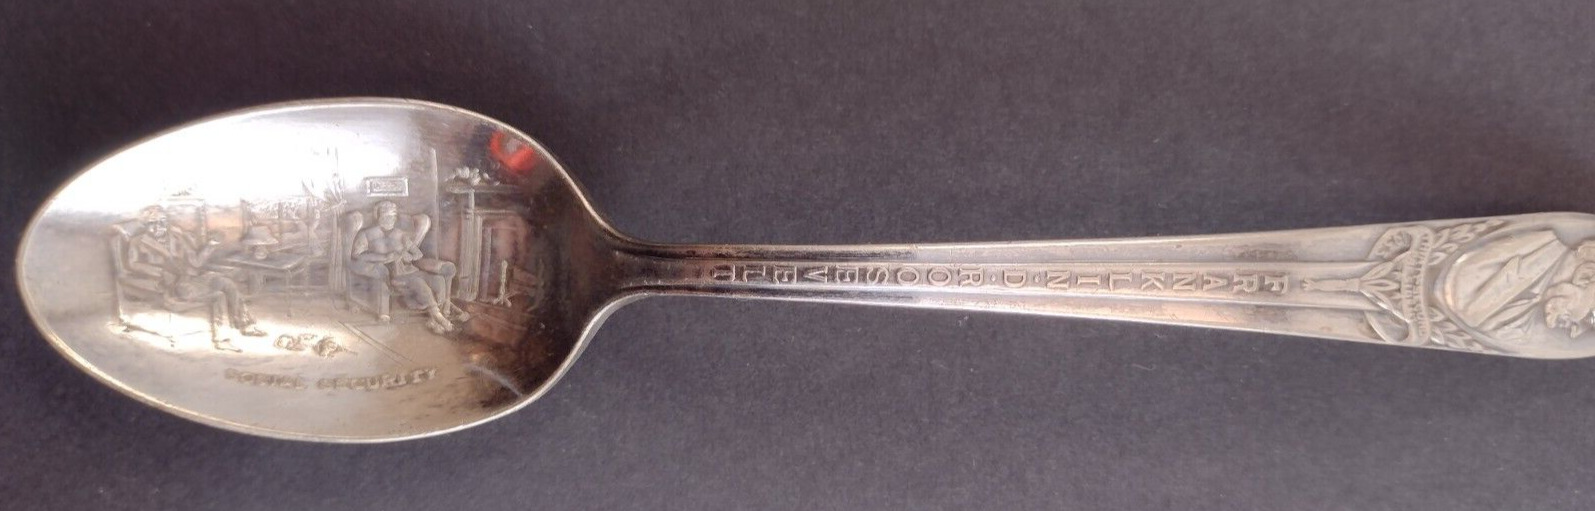 Vintage Souvenir Spoon FRANKLIN D ROOSEVELT Social Security WM Rogers